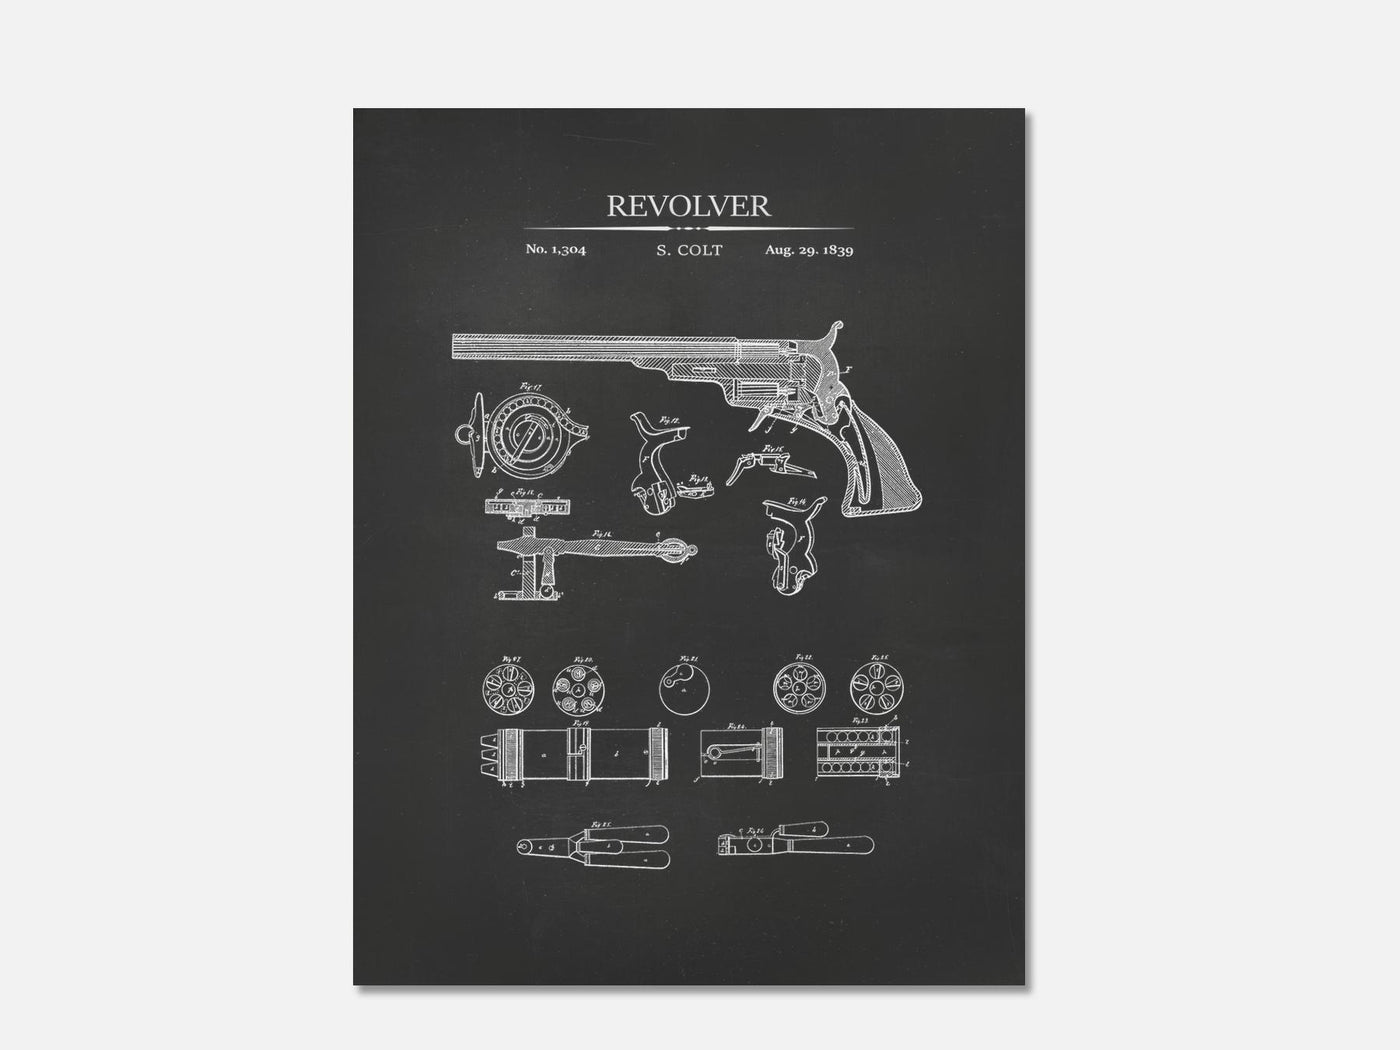 Colt Revolver Patent Print mockup - A_t10005.3-V1-PC_AP-SS_1-PS_5x7-C_cha variant